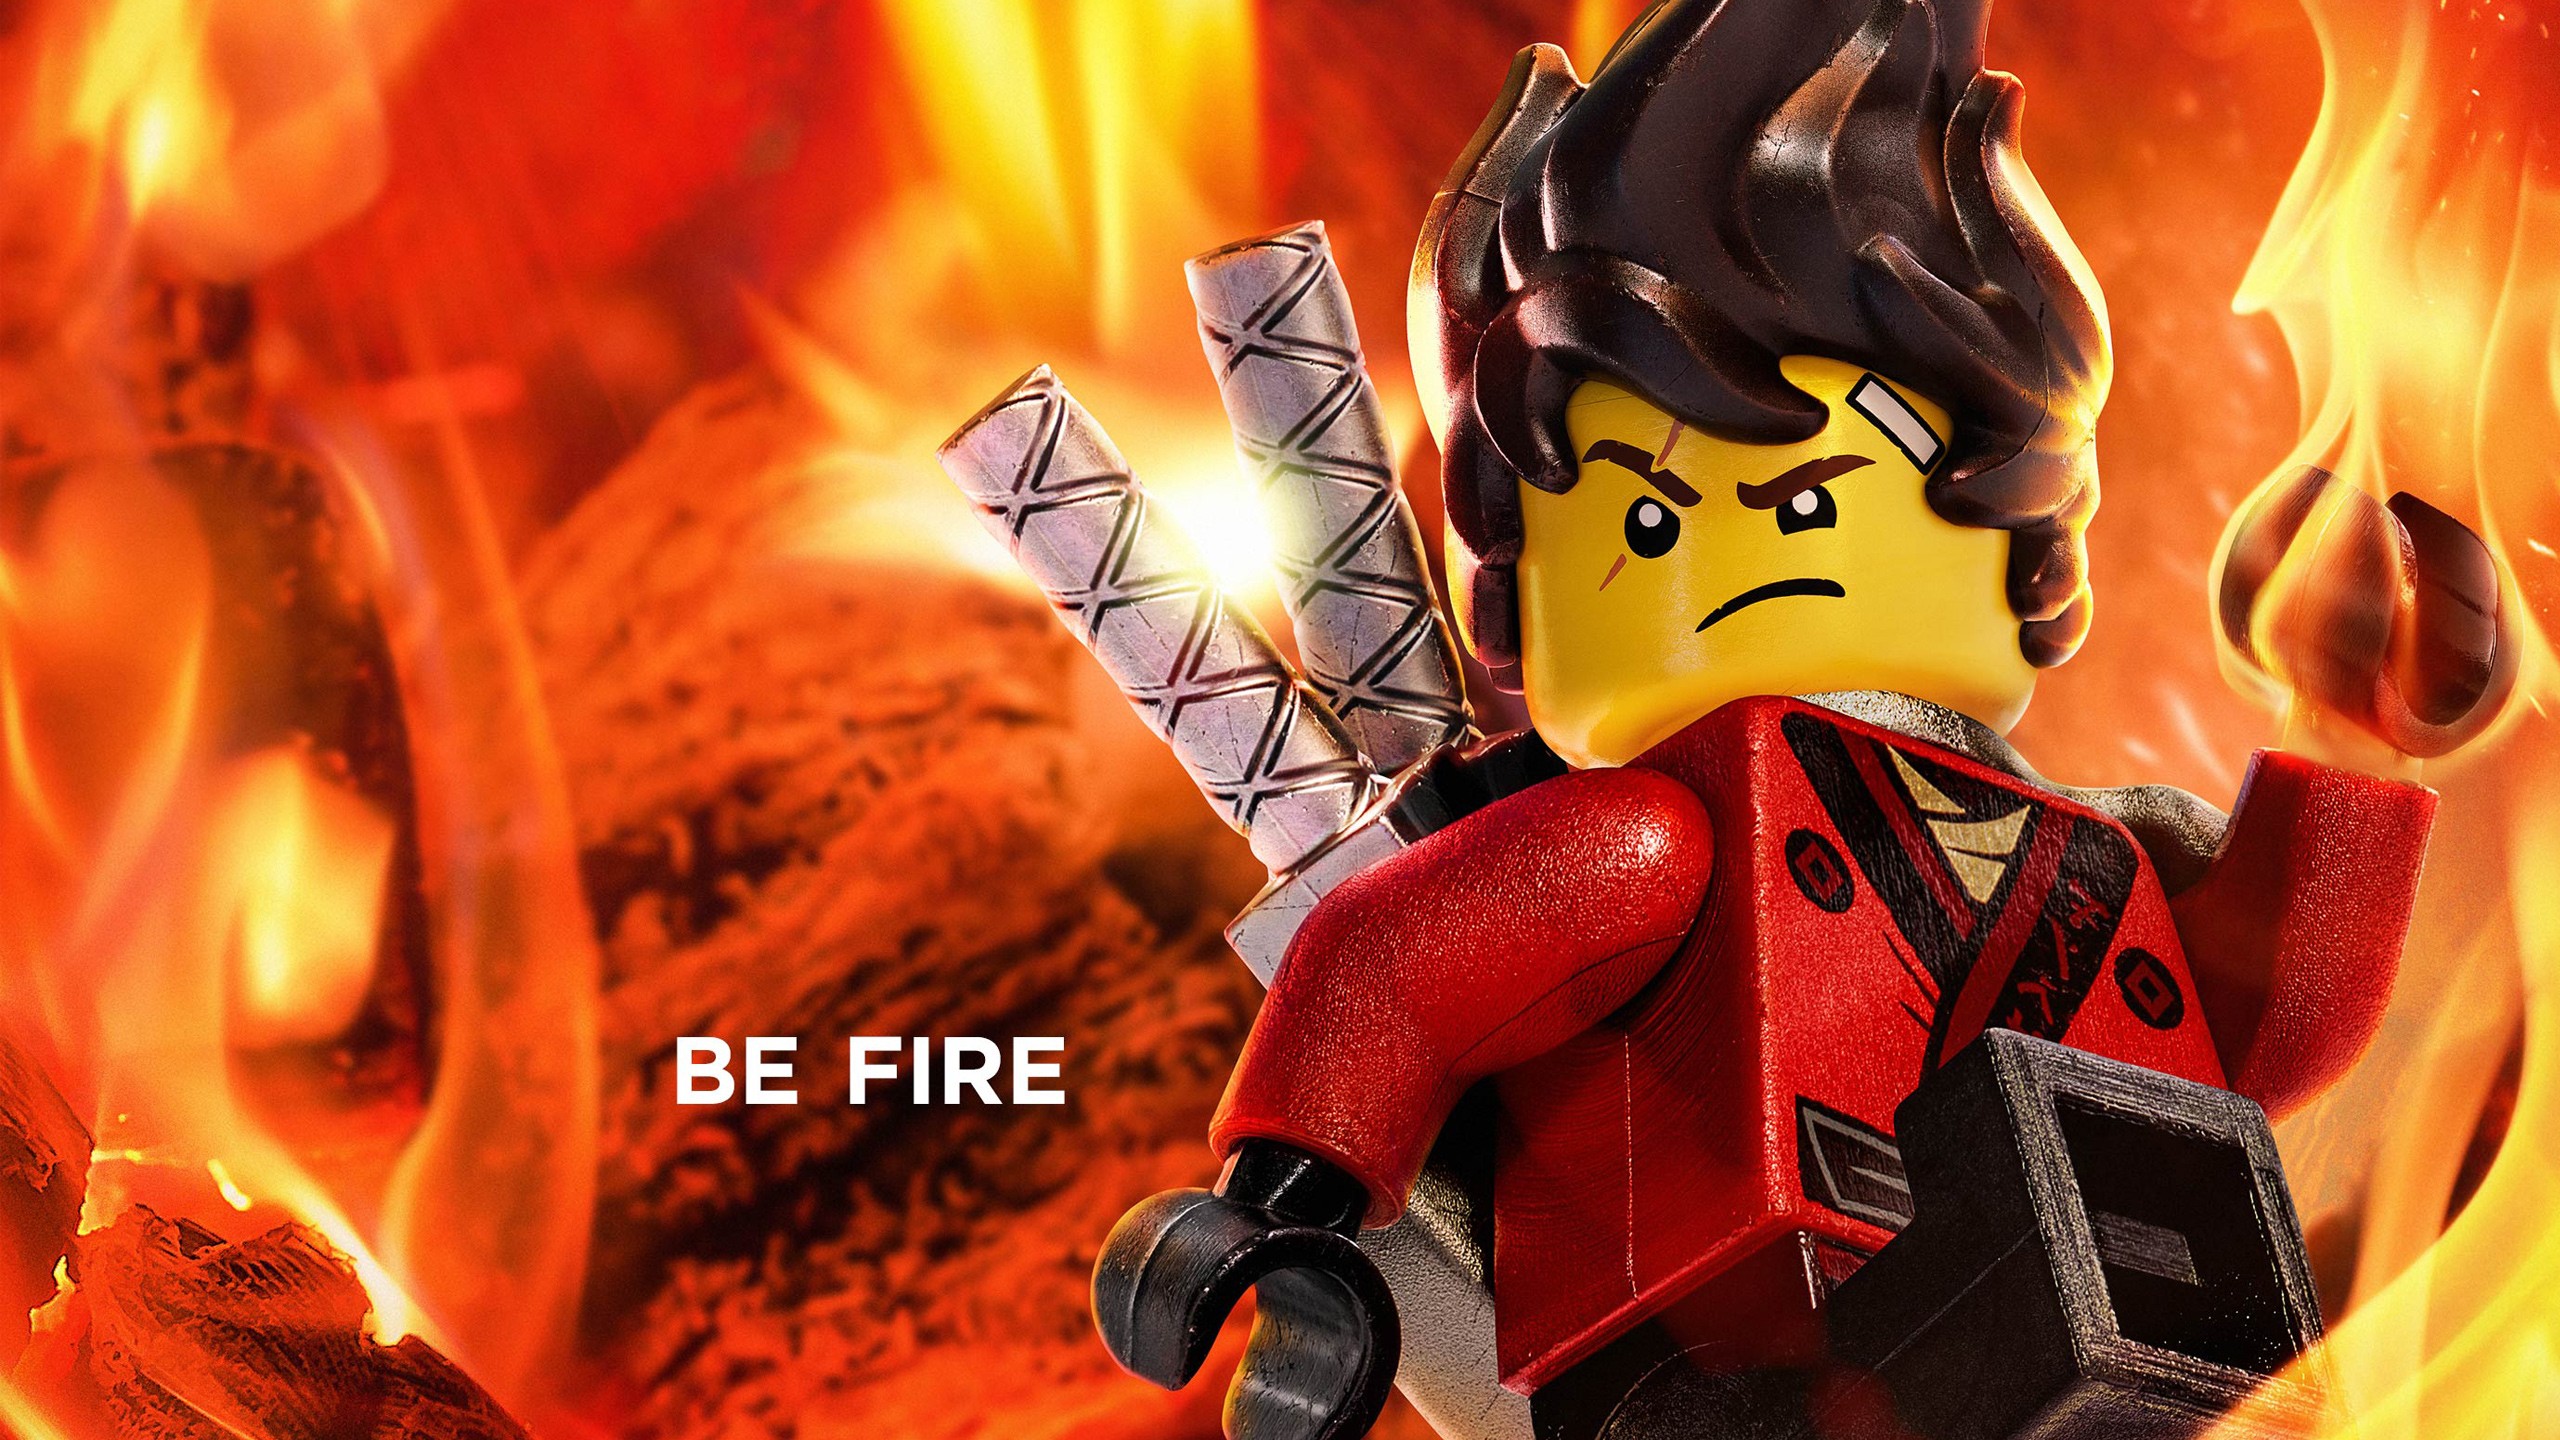 Kai Be Fire The Lego Ninjago Movie 2017 Wallpapers